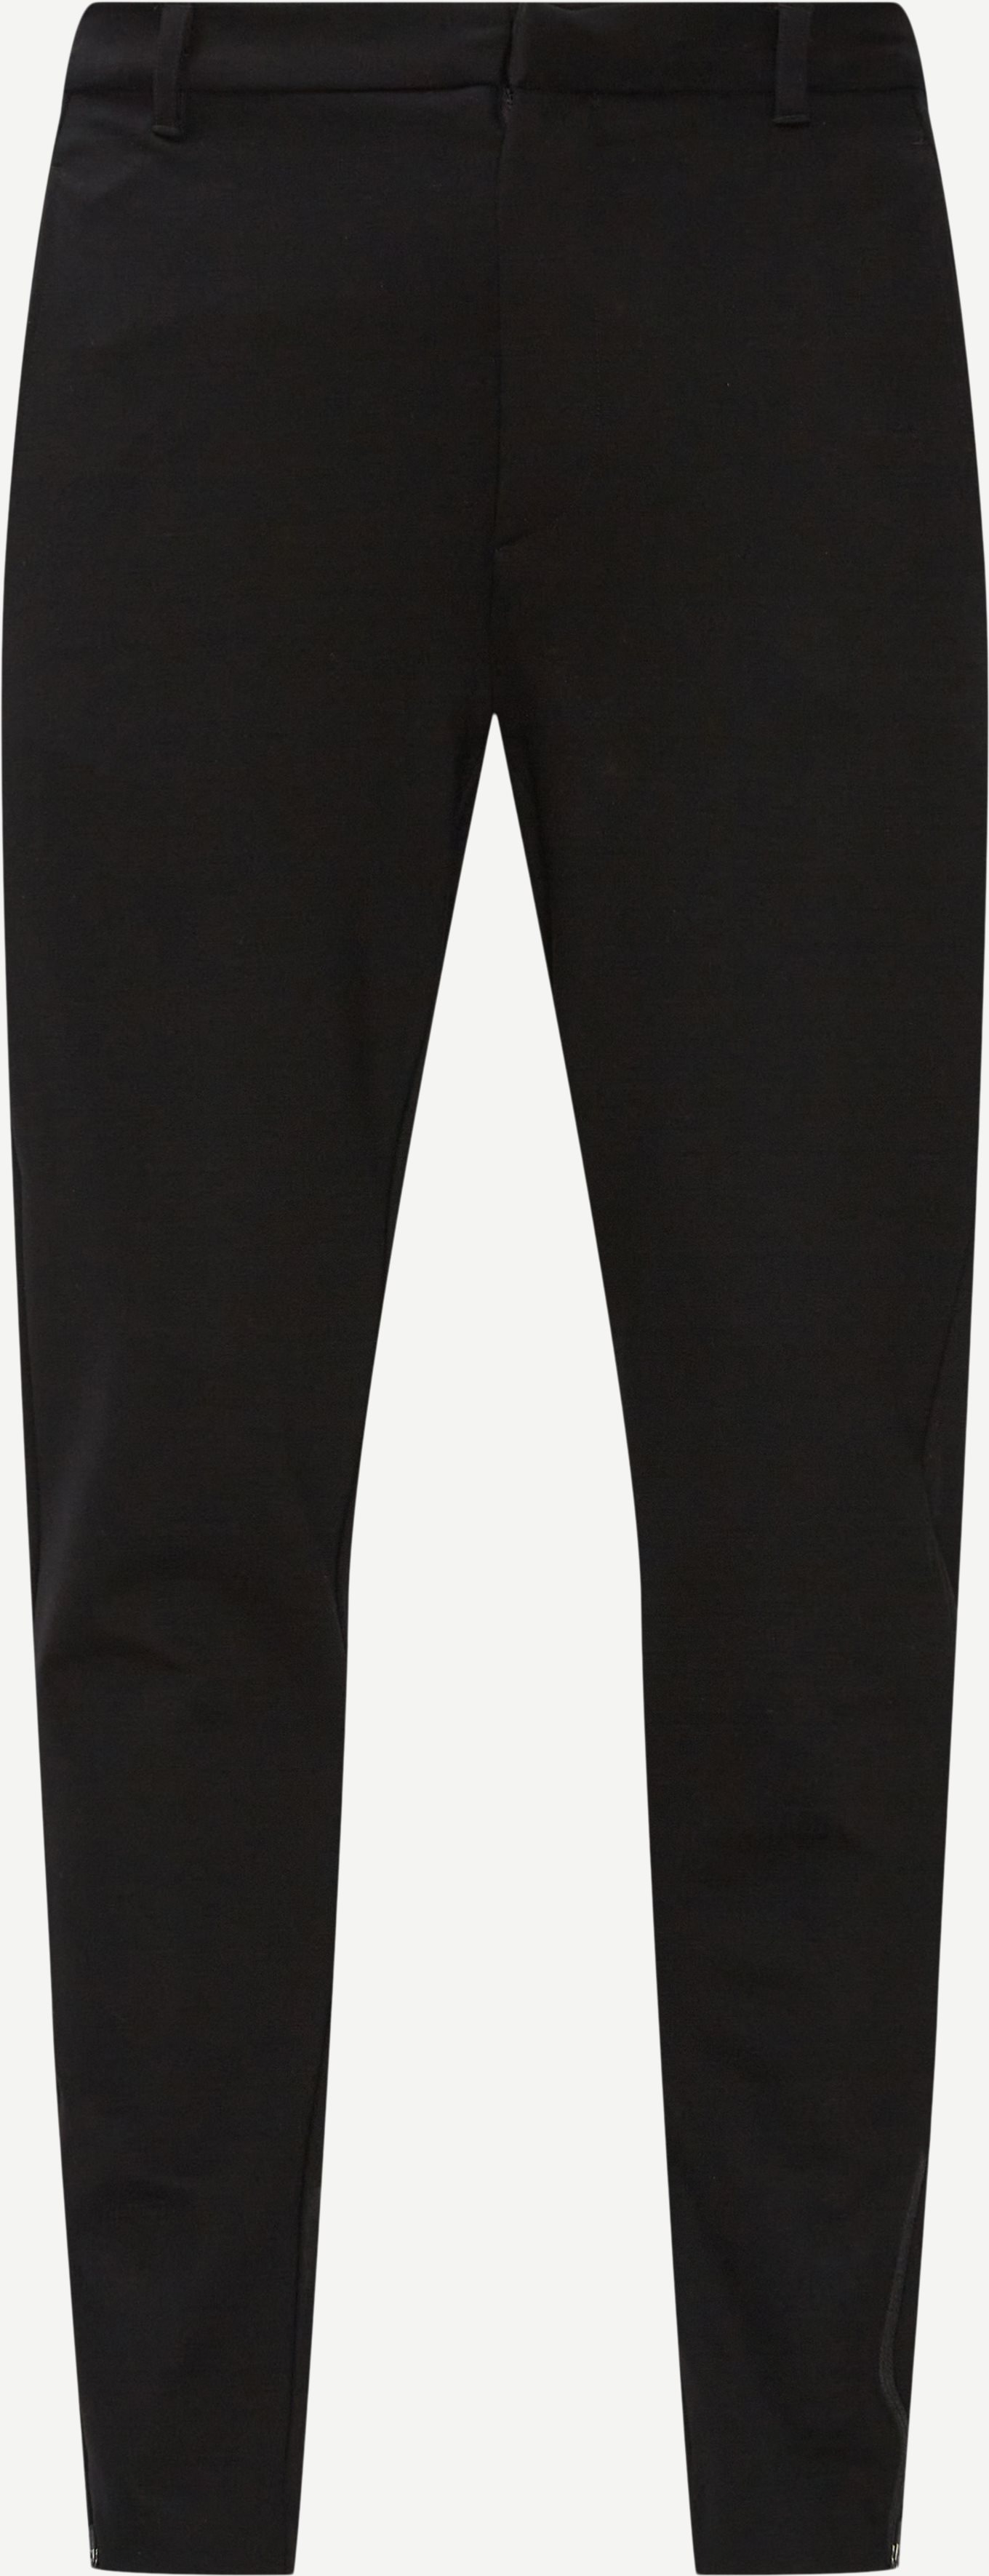 Politan Zip Pants - Bukser - Slim fit - Sort